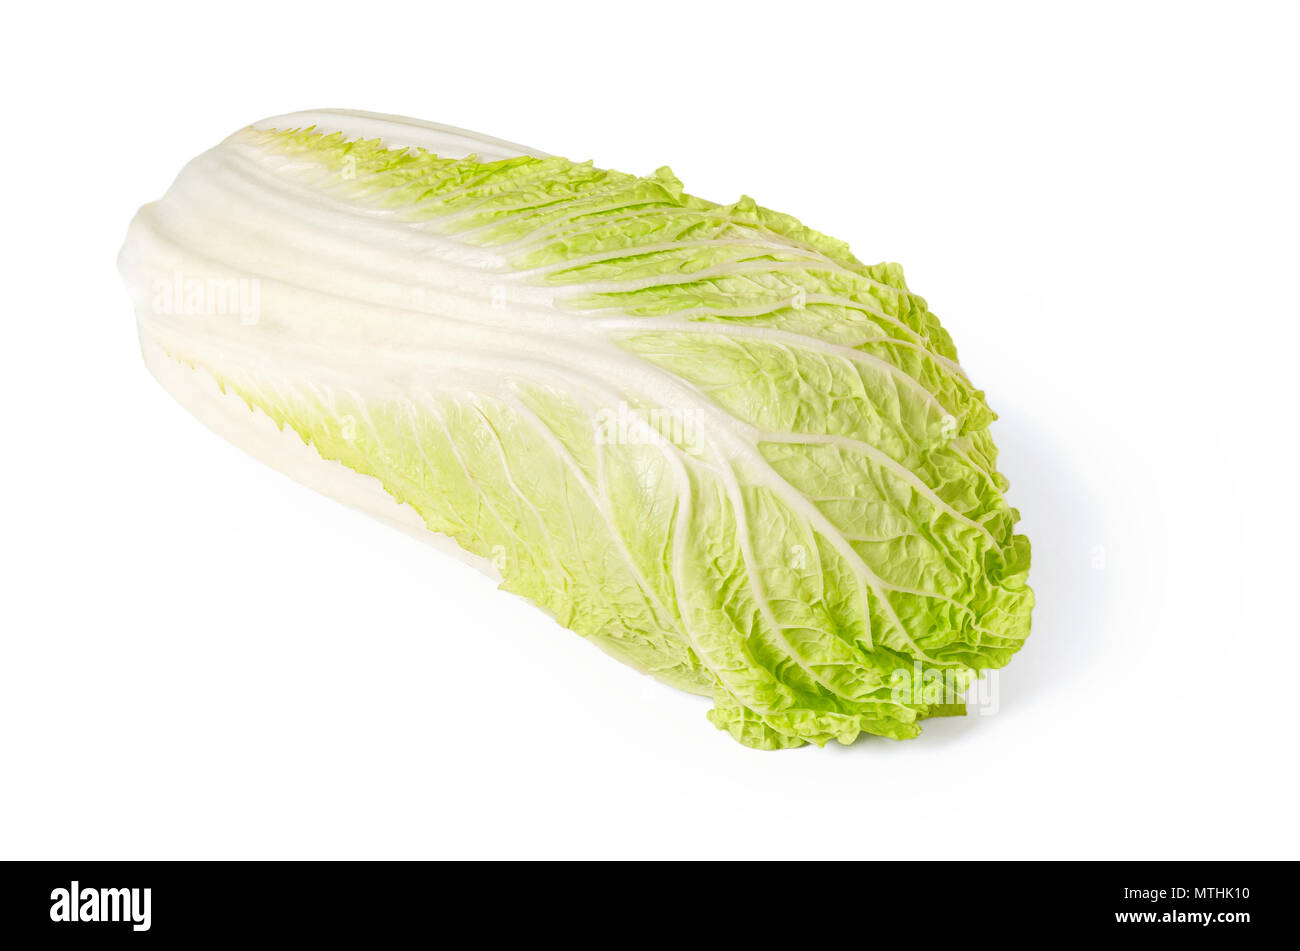 Napa cabbage Vorderansicht auf weißem Hintergrund. Chinakohl, auch genannt Nappa und wombok. Rohe, Frische, ungekochte und grünes Gemüse. Brassica rapa. Stockfoto